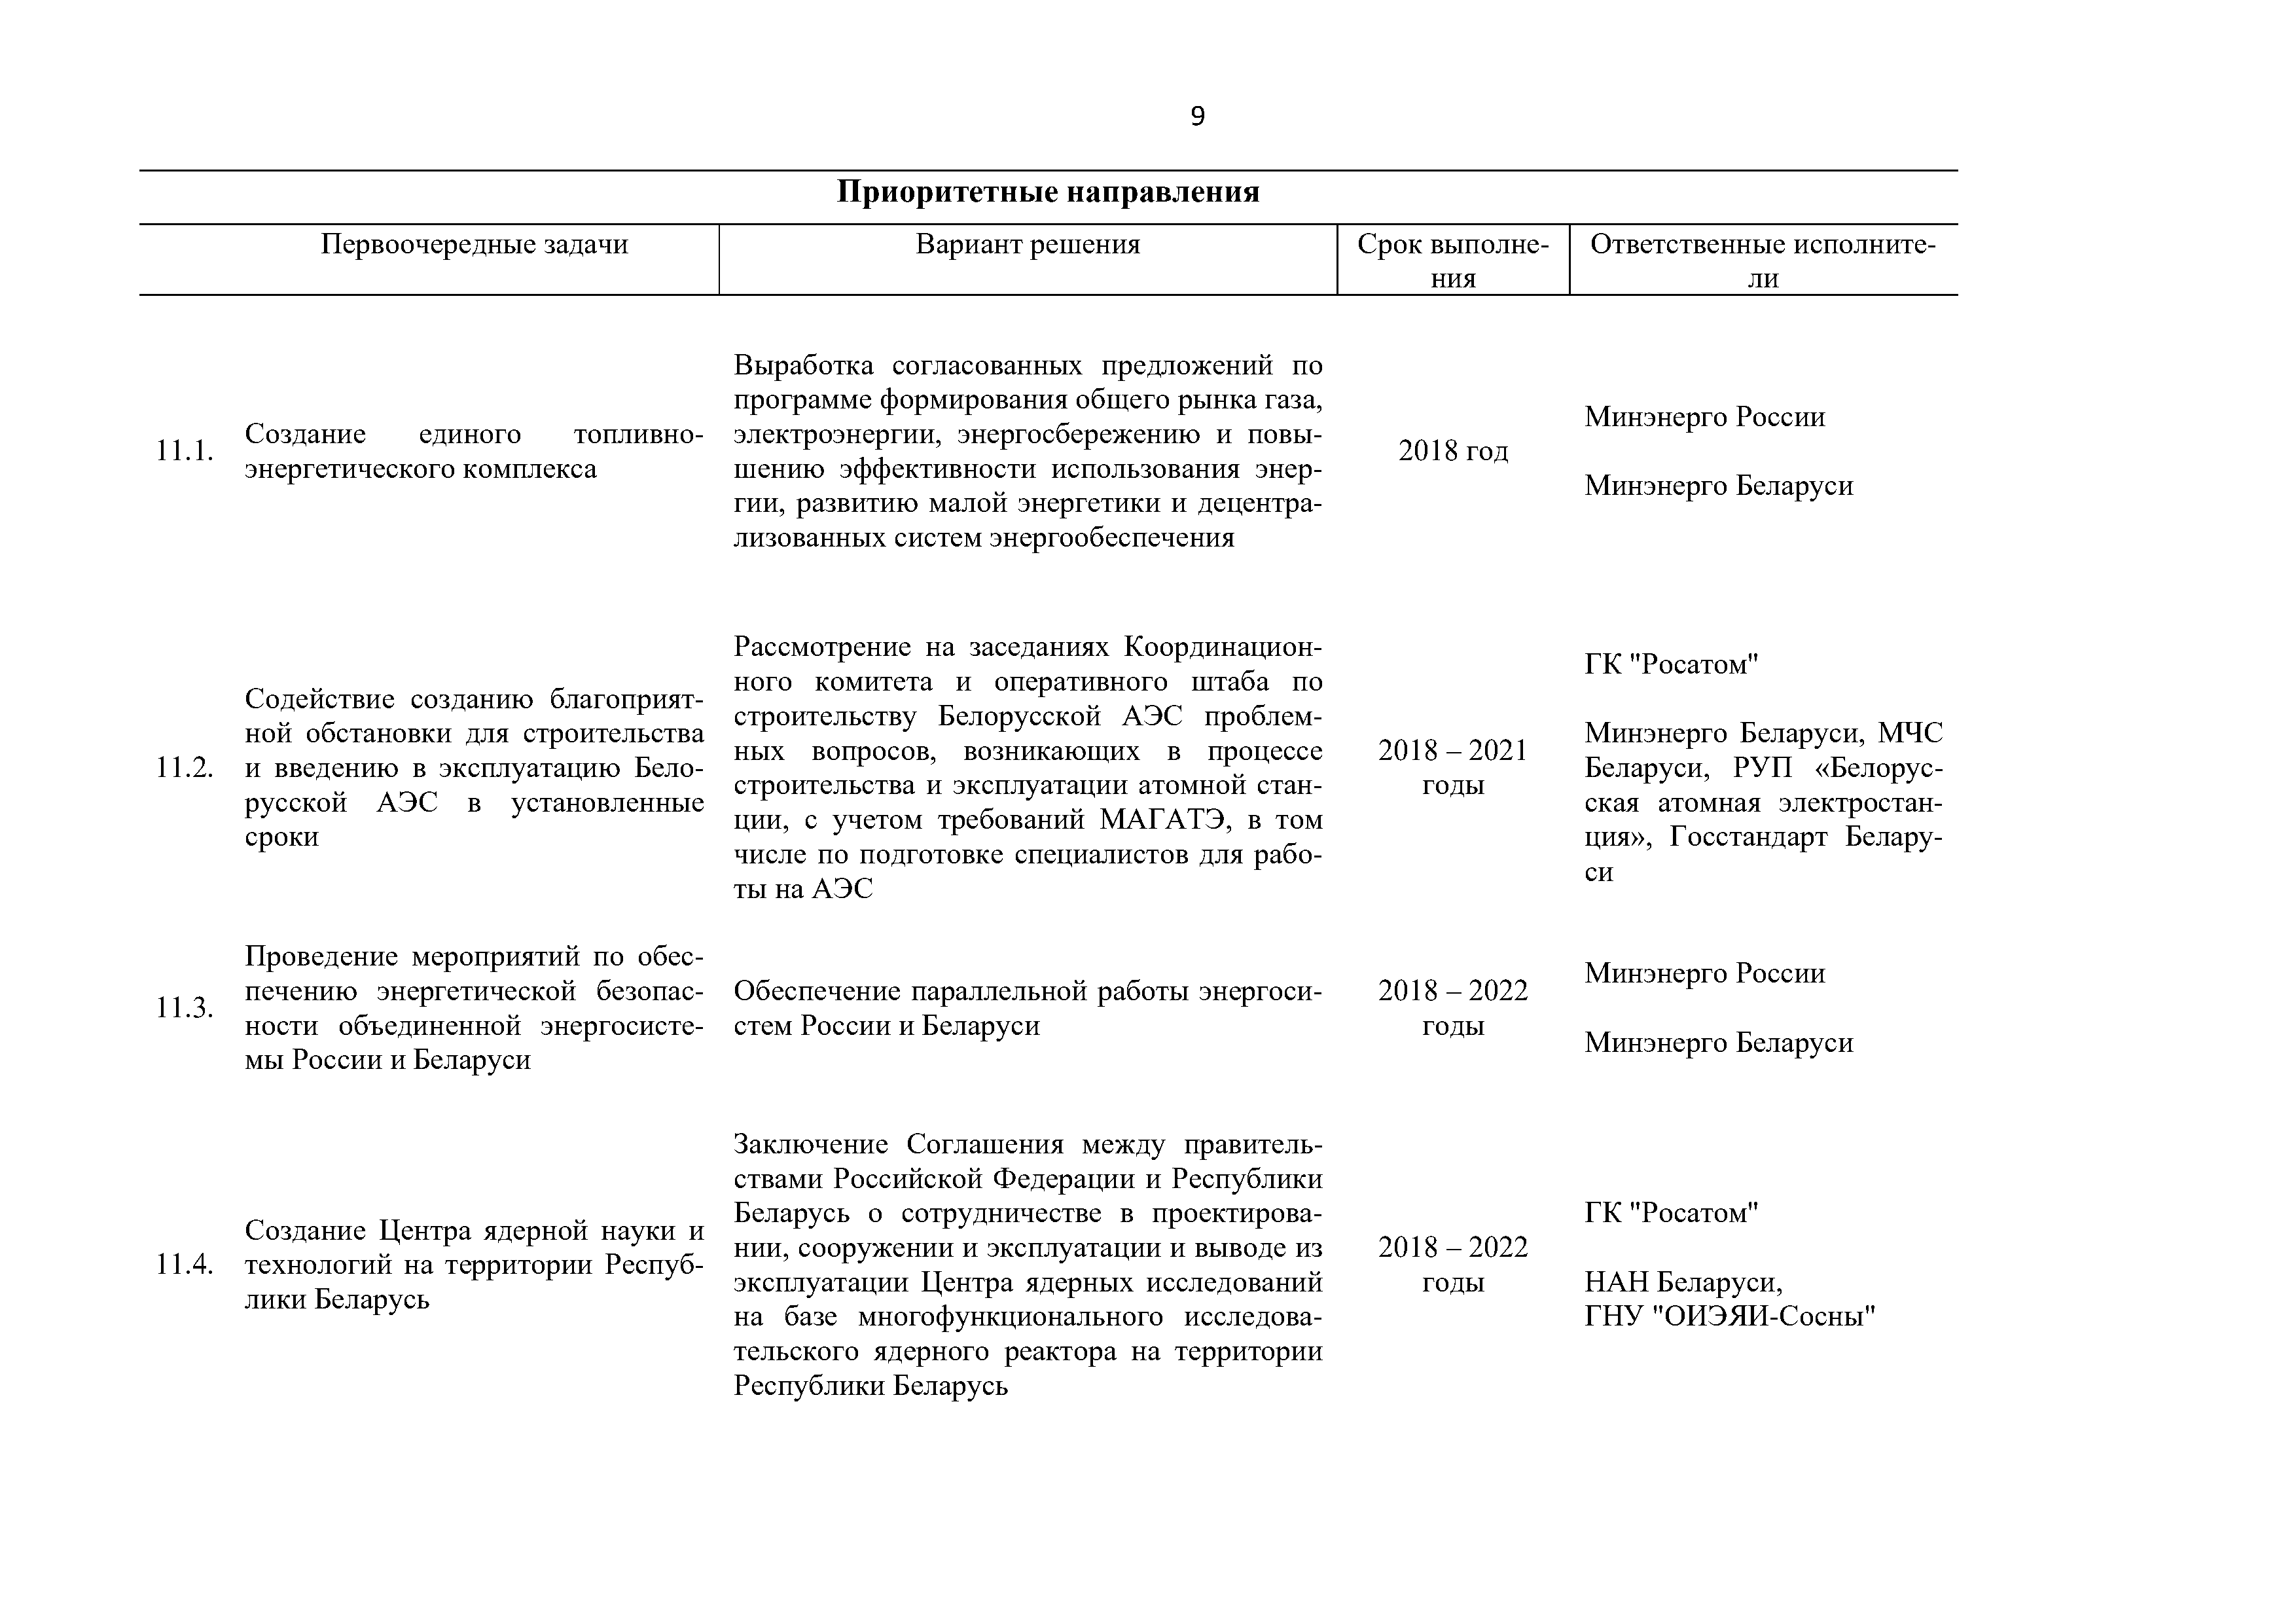 Приоритетные направления и первоочередные задачи развития Союзного государства на 2018 – 2022 г. (Страница 9)